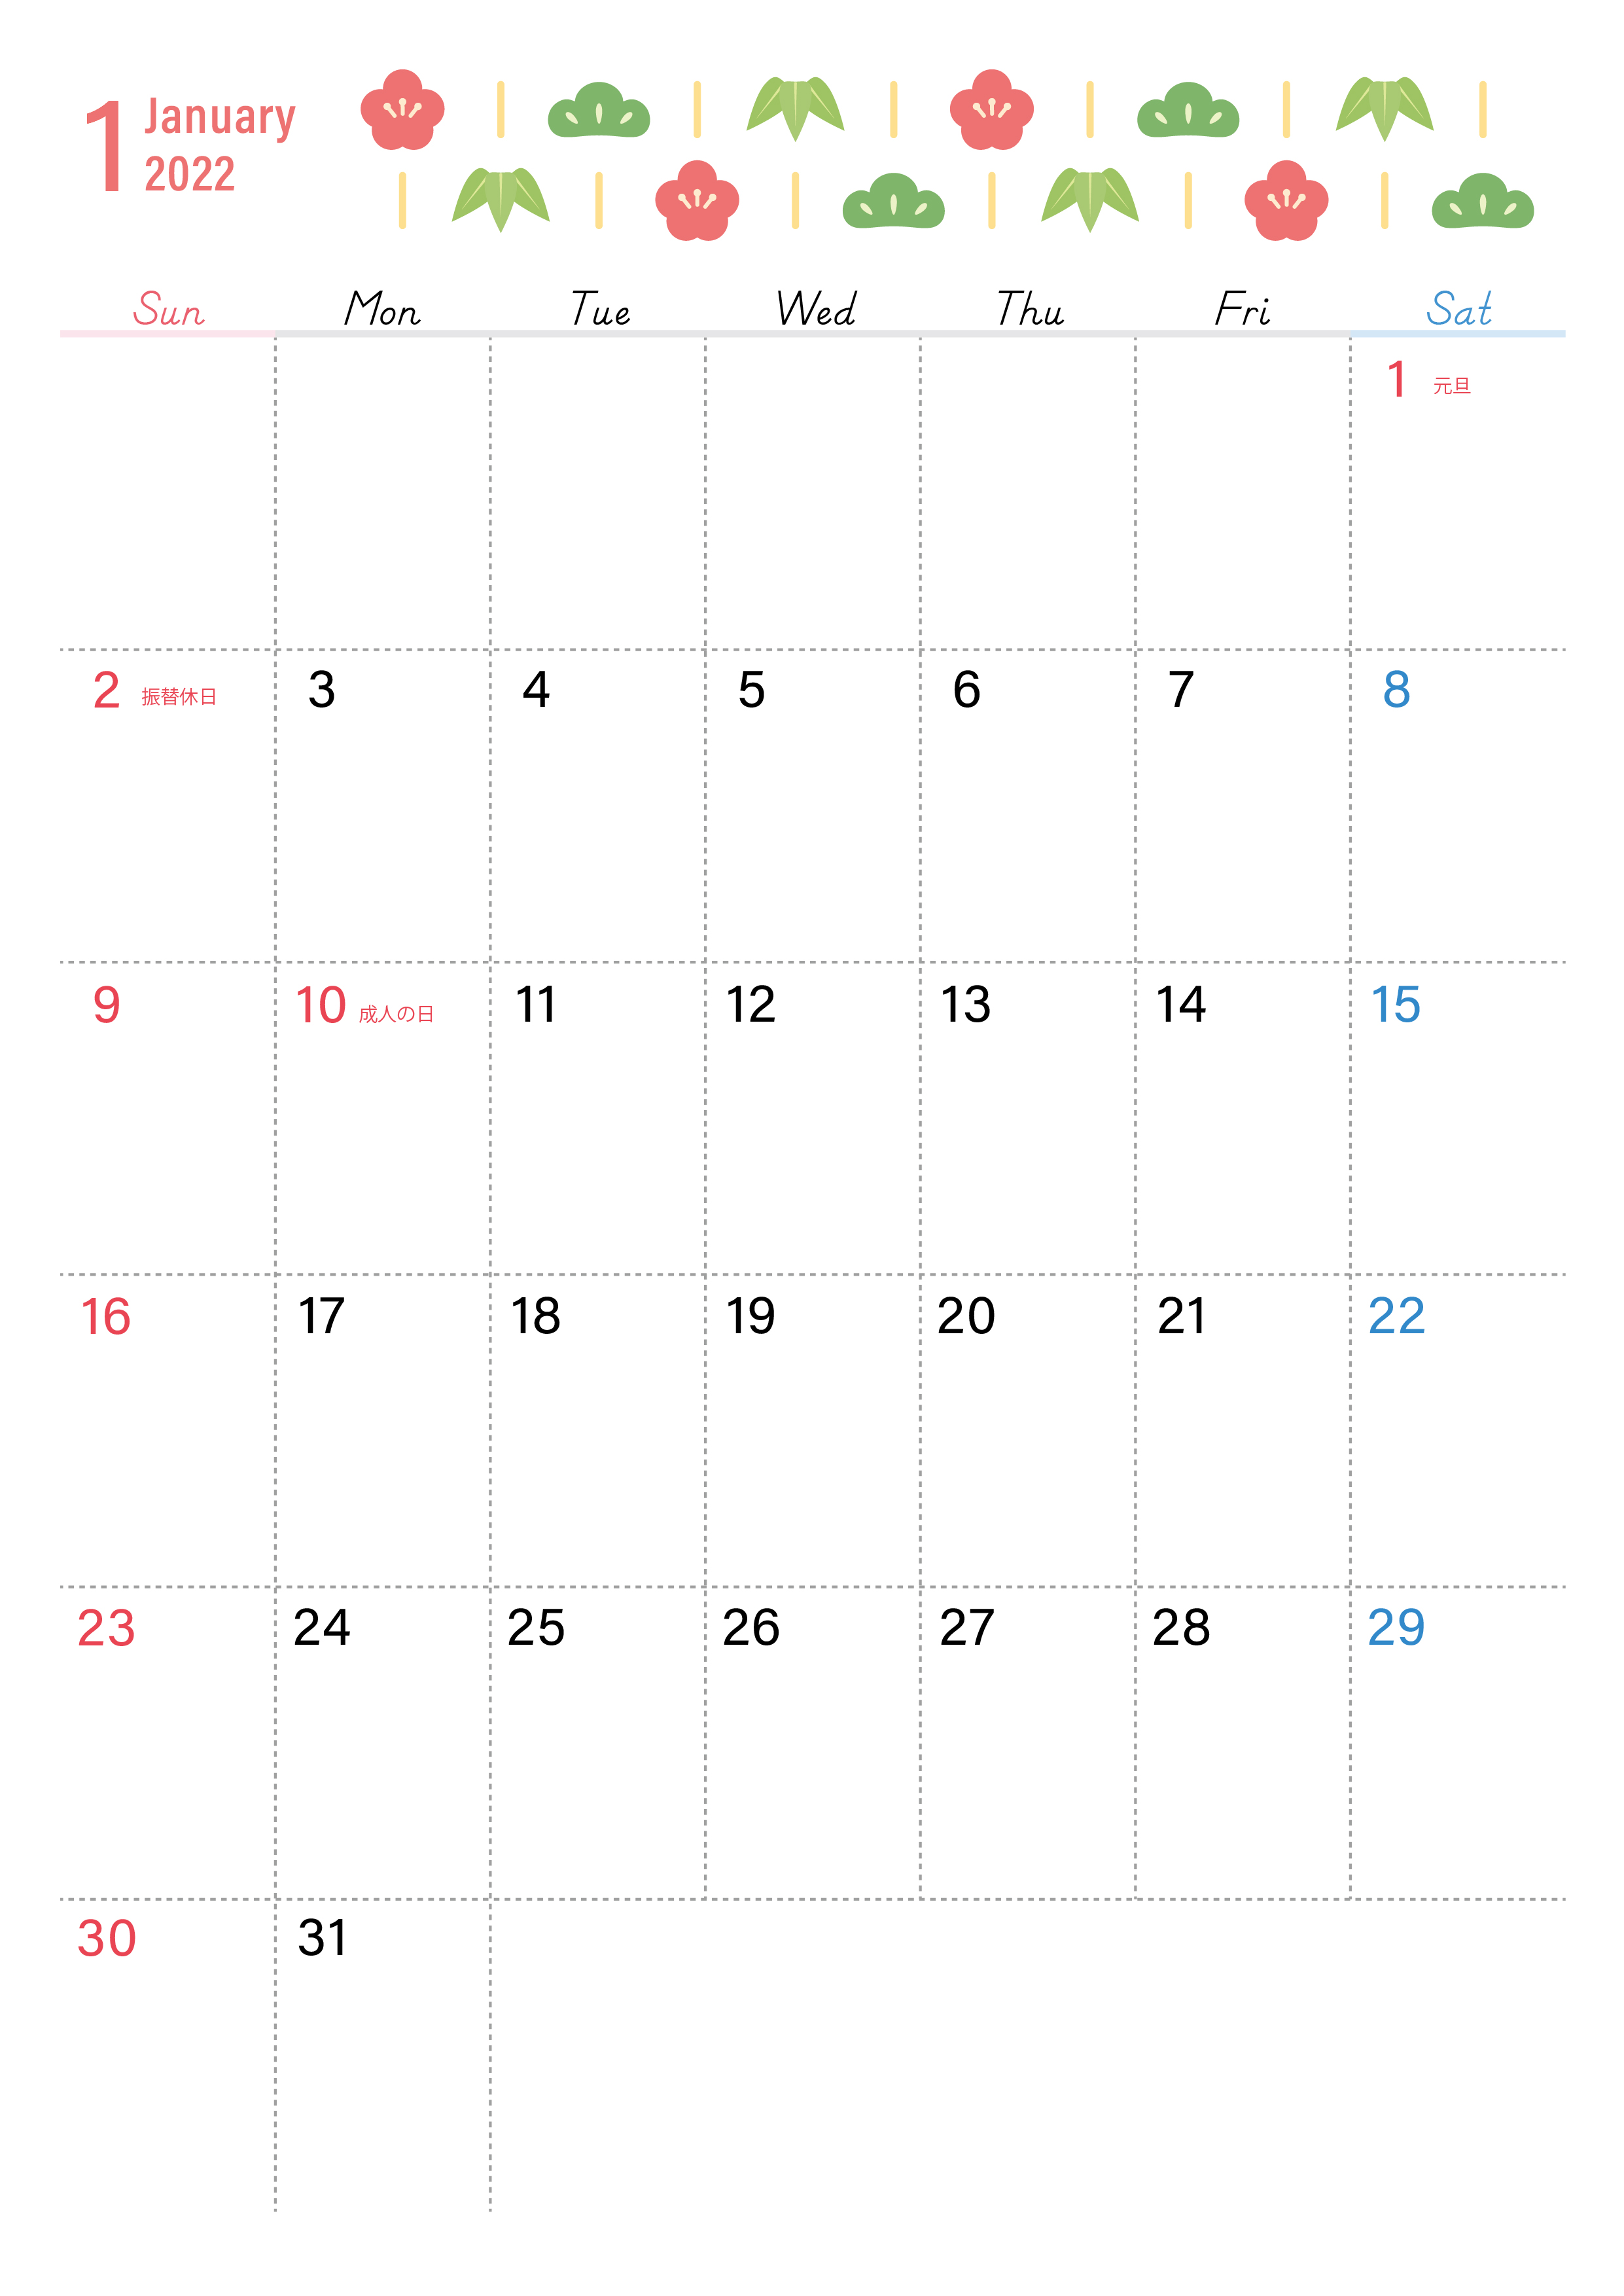 かわいい松竹梅デザインの22年1月カレンダー サイズ はダウンロードが無料 素材デザイン王